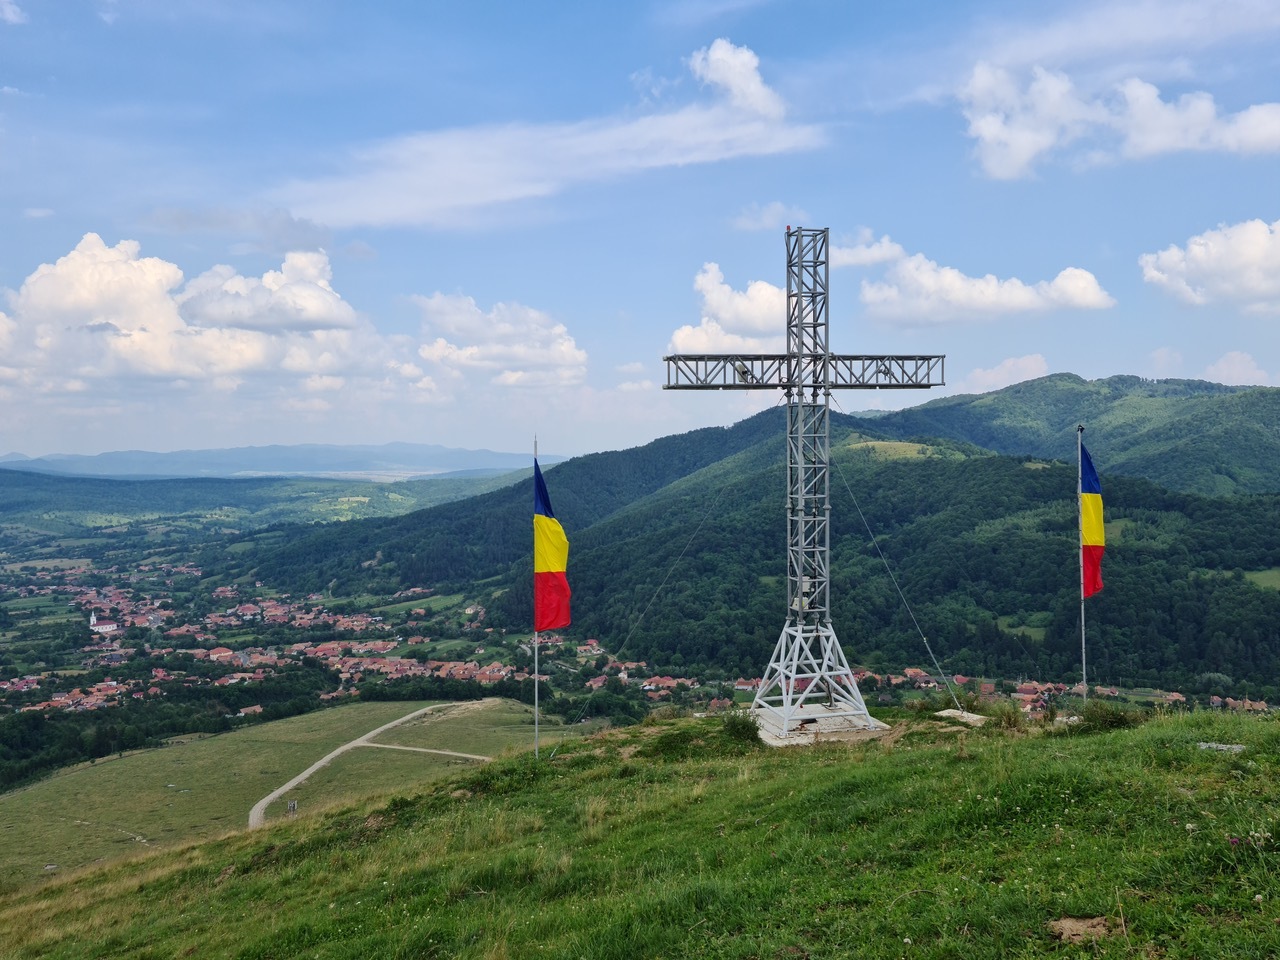 Țara Făgărașului - gust, tradiții, pasiune și credință în Destinația anului 2020 în România - Imaginea 2